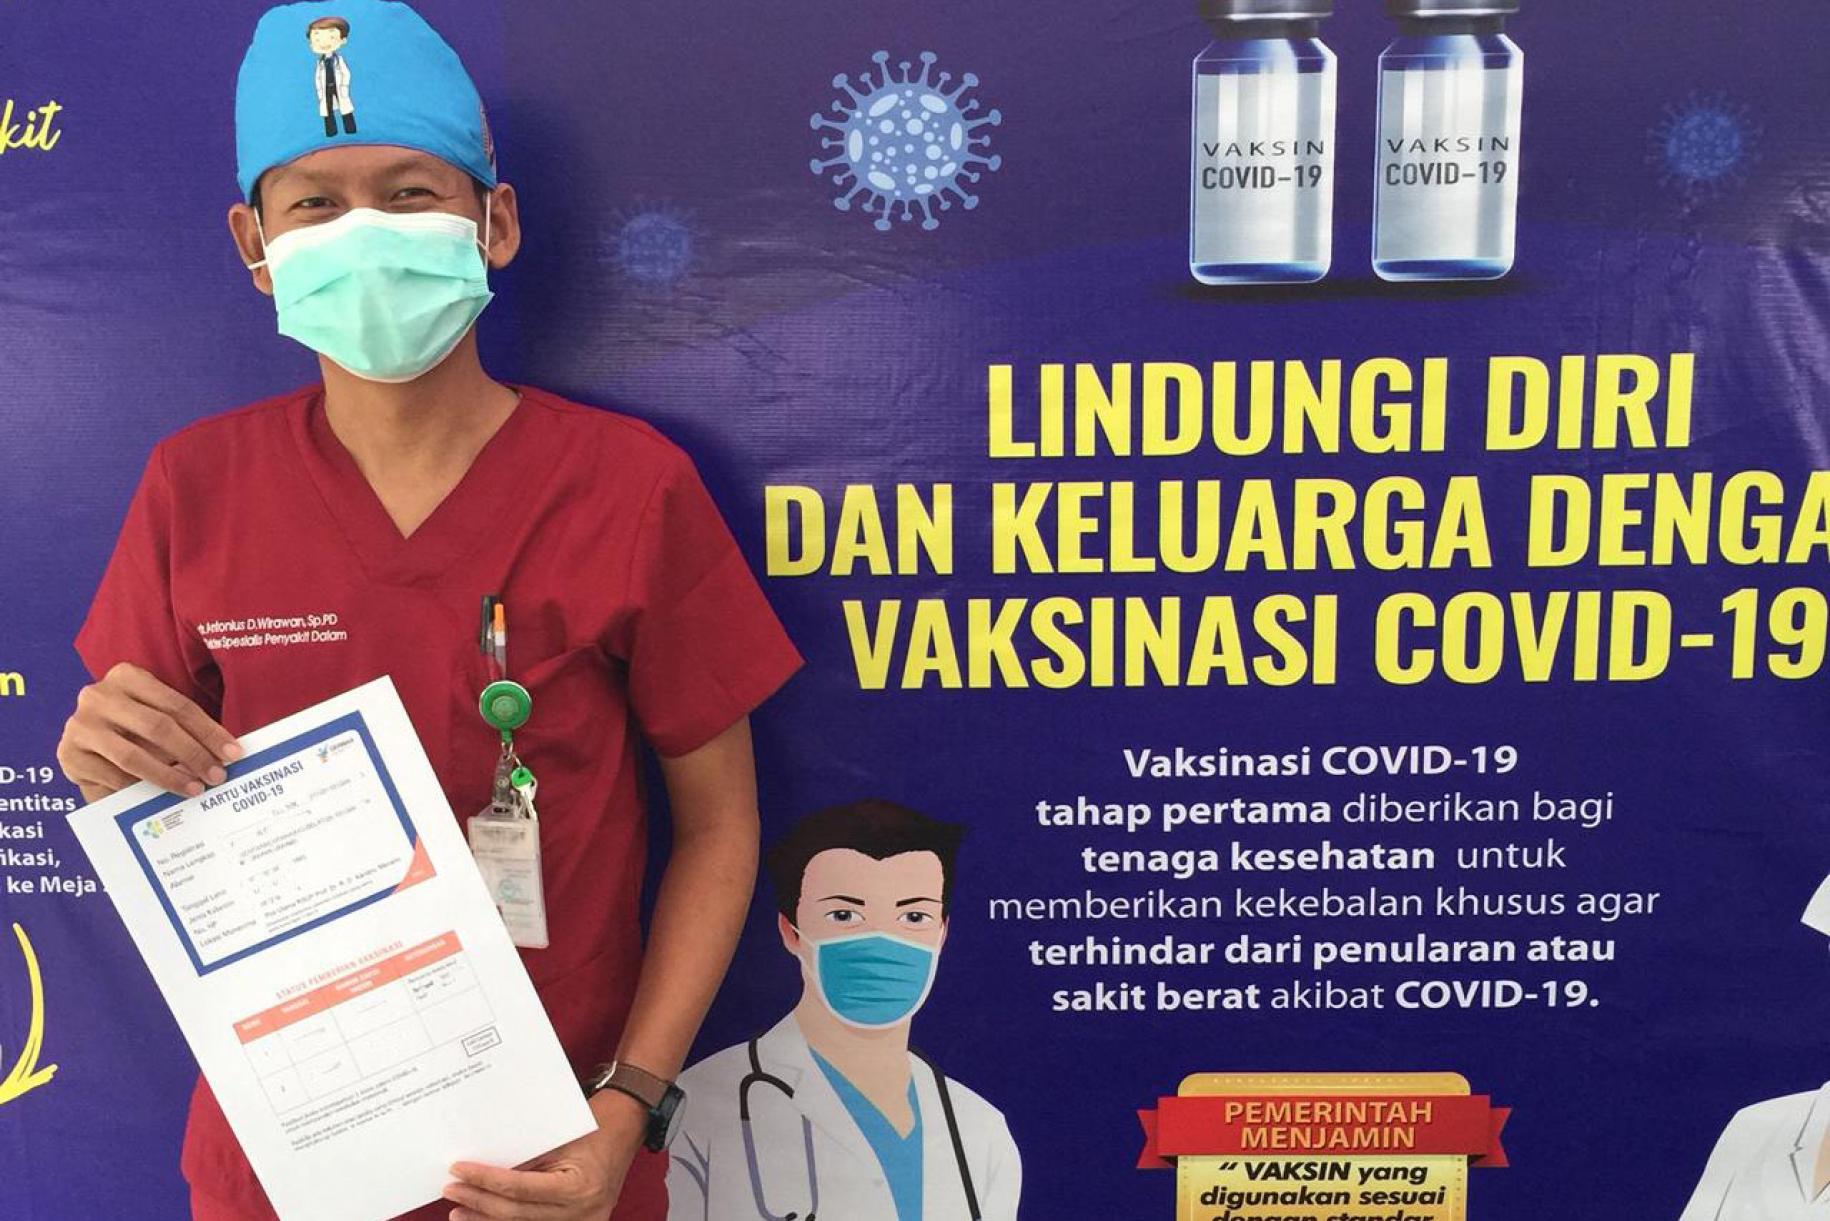 El Dr. Antonius Irawan se para frente a un cartel de vacunación COVID-19 con su certificado de vacunación COVID-19 después de recibir su primera dosis de la vacuna COVID-19 en el Hospital General del Distrito Dr. Kandou en la ciudad de Manado, provincia de Sulawesi del Norte